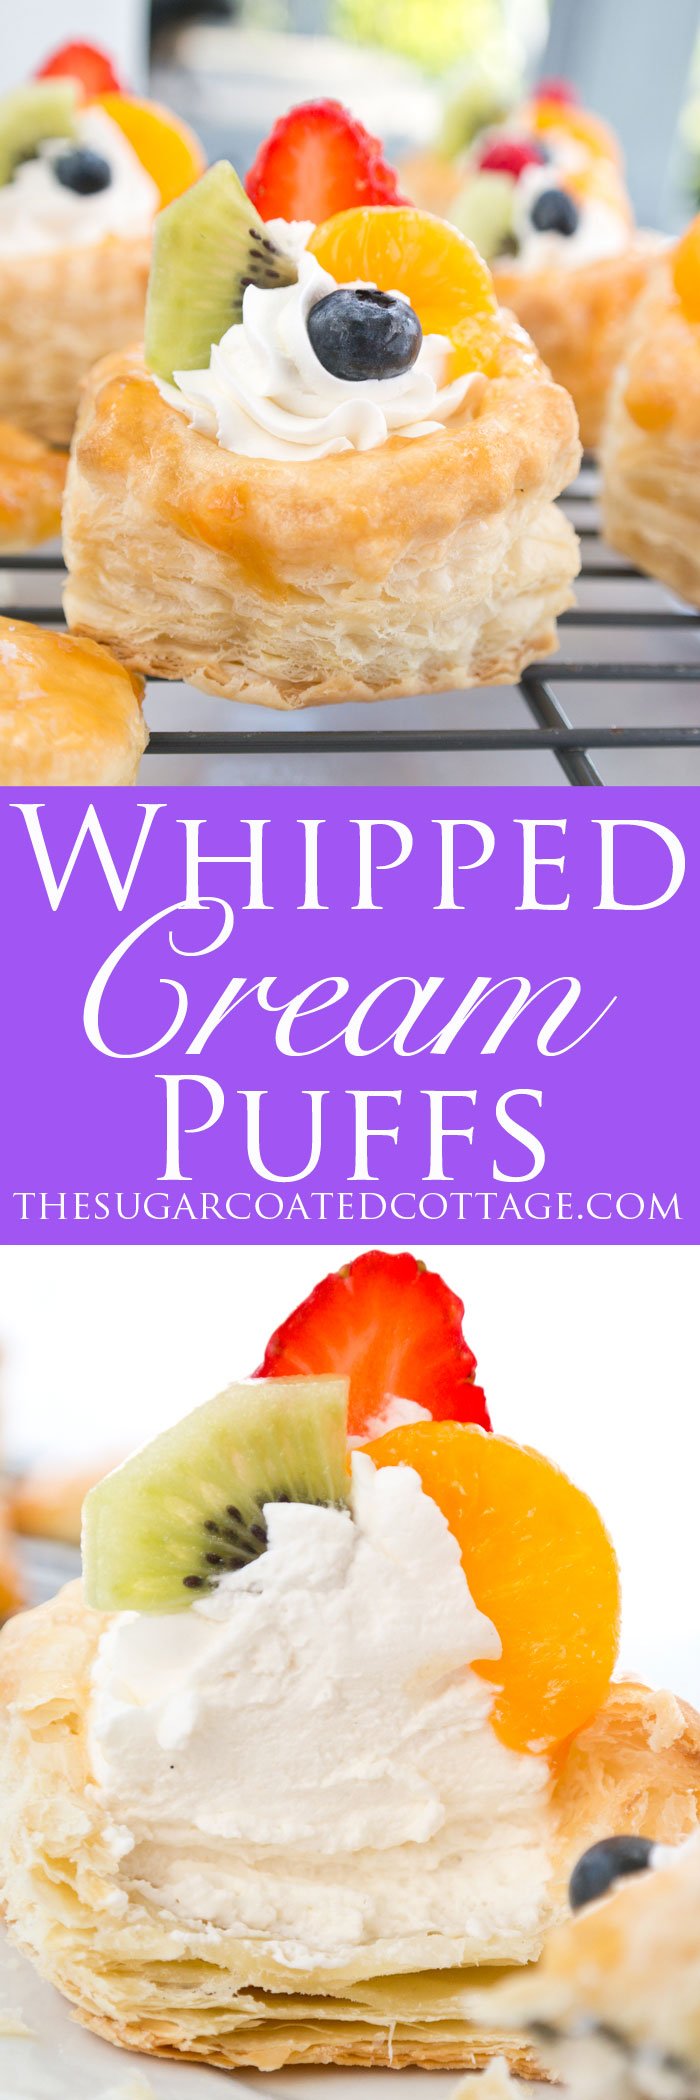 Whipped Cream Puffs